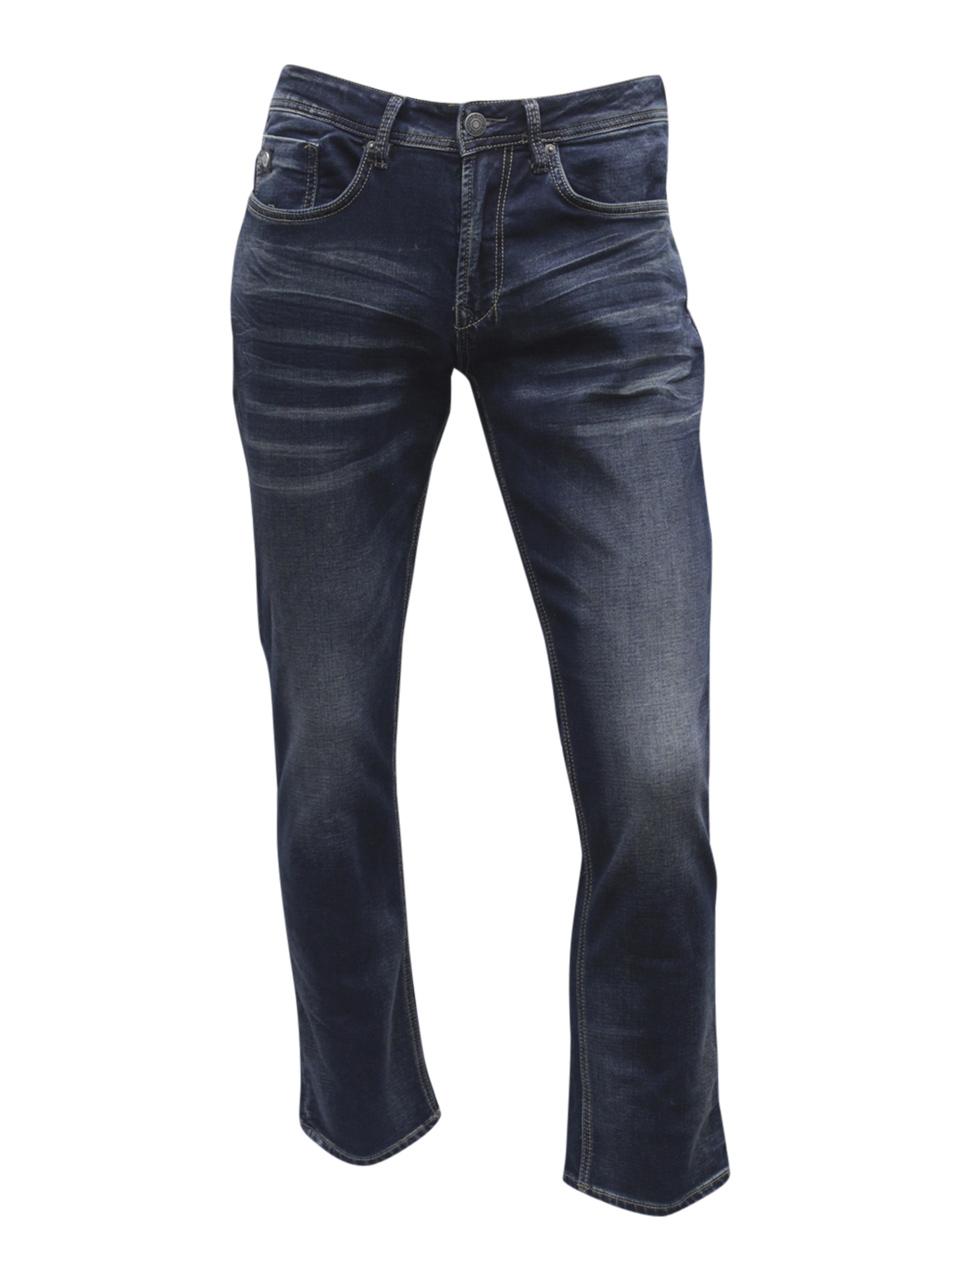 david britton jeans